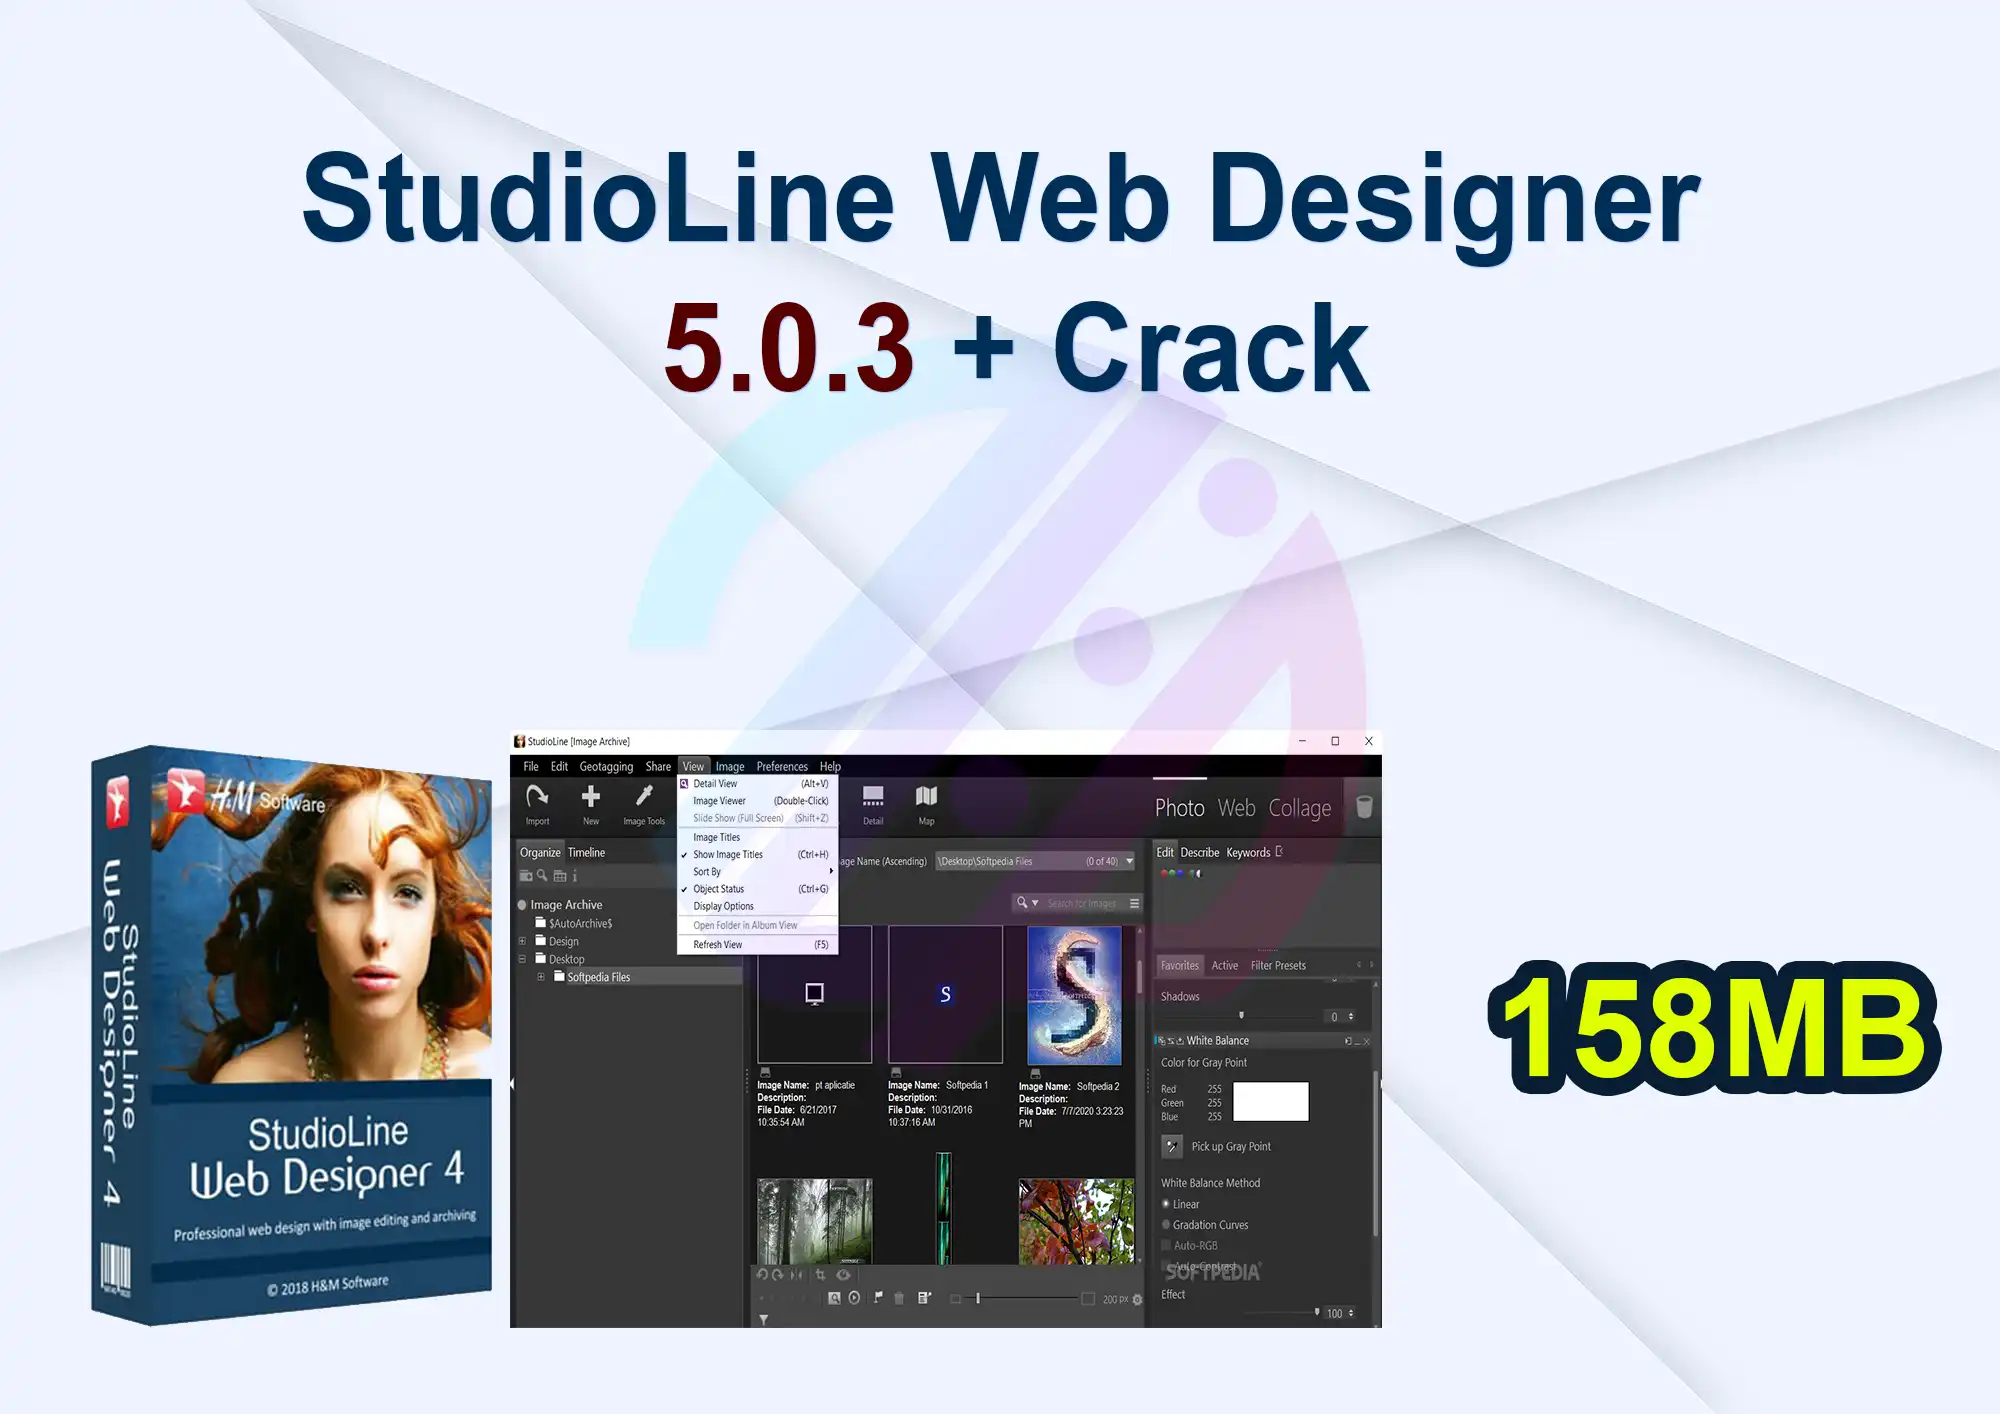 StudioLine Web Designer 5.0.3 + Crack